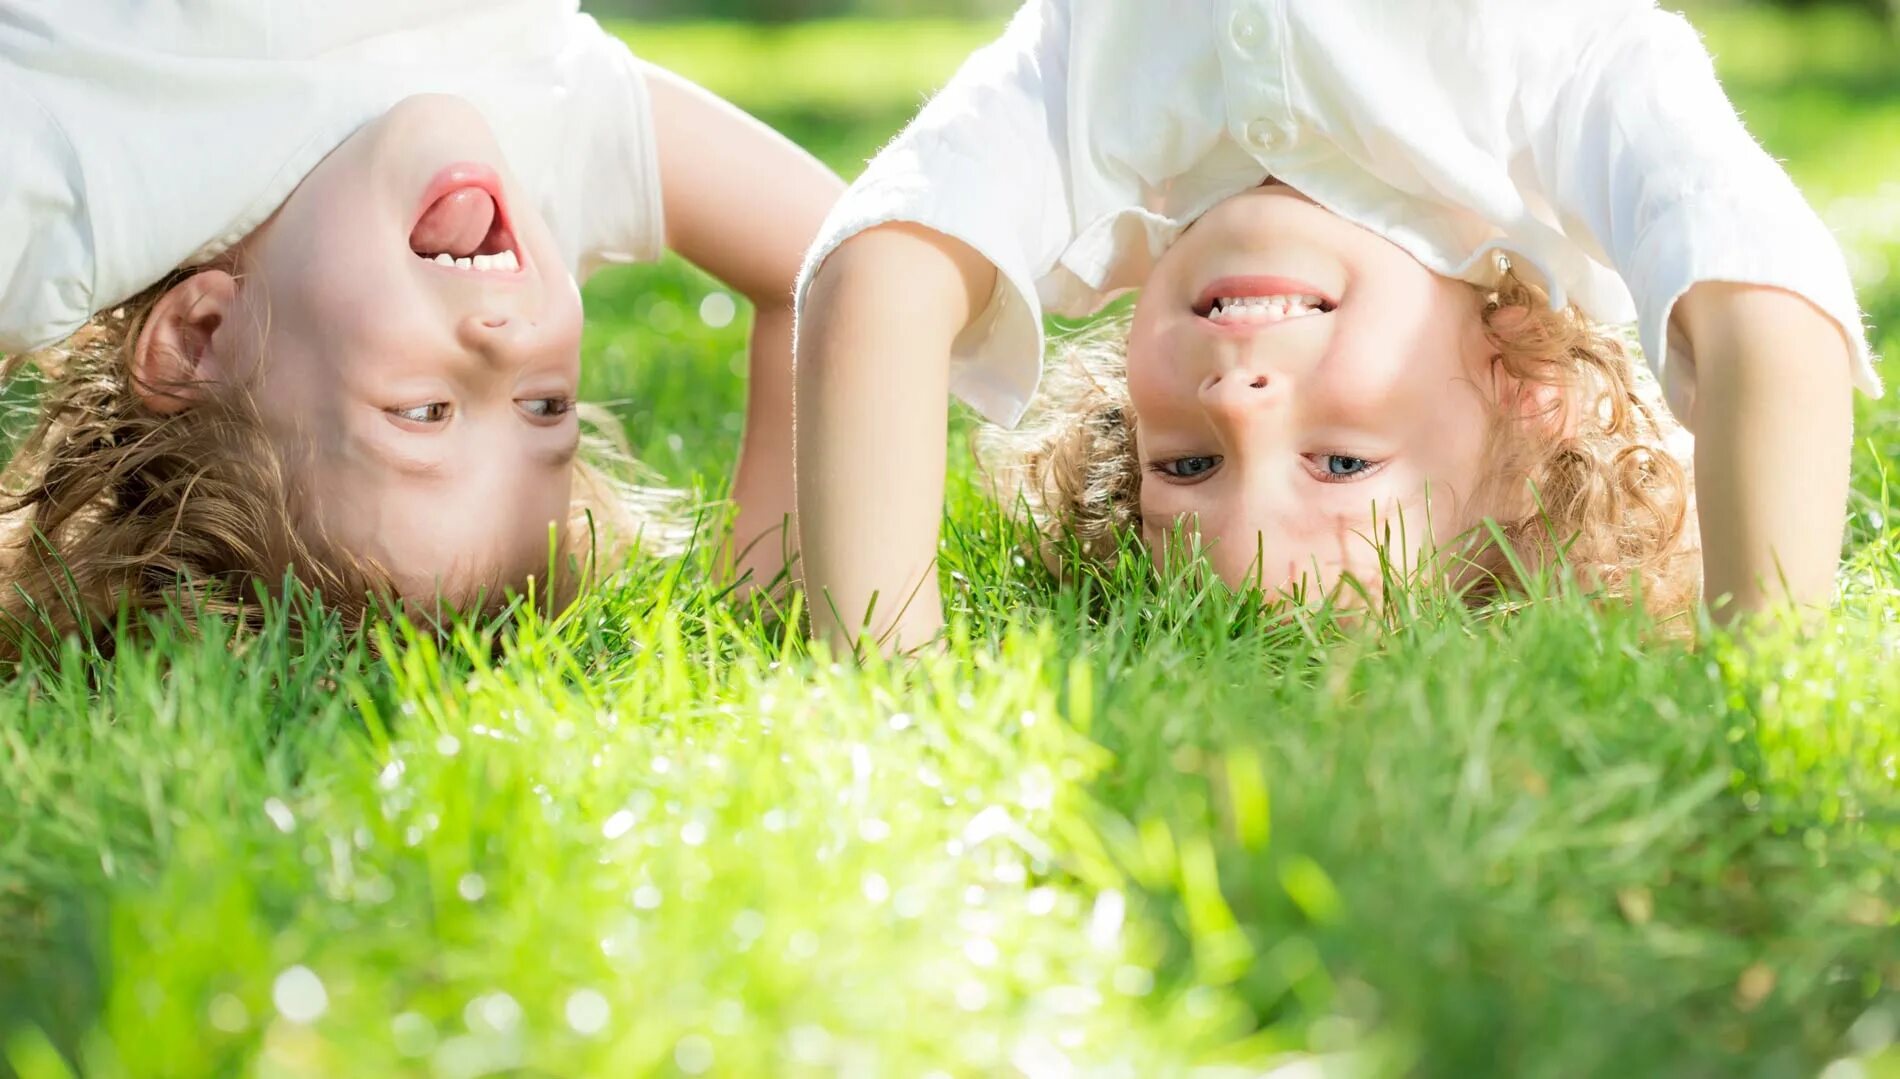 Дети стоят на траве. С днем защиты детей. Счастливое детство иммунитет на всю жизнь. Счастливое детство это иммунитет на всю жизнь картинкика.